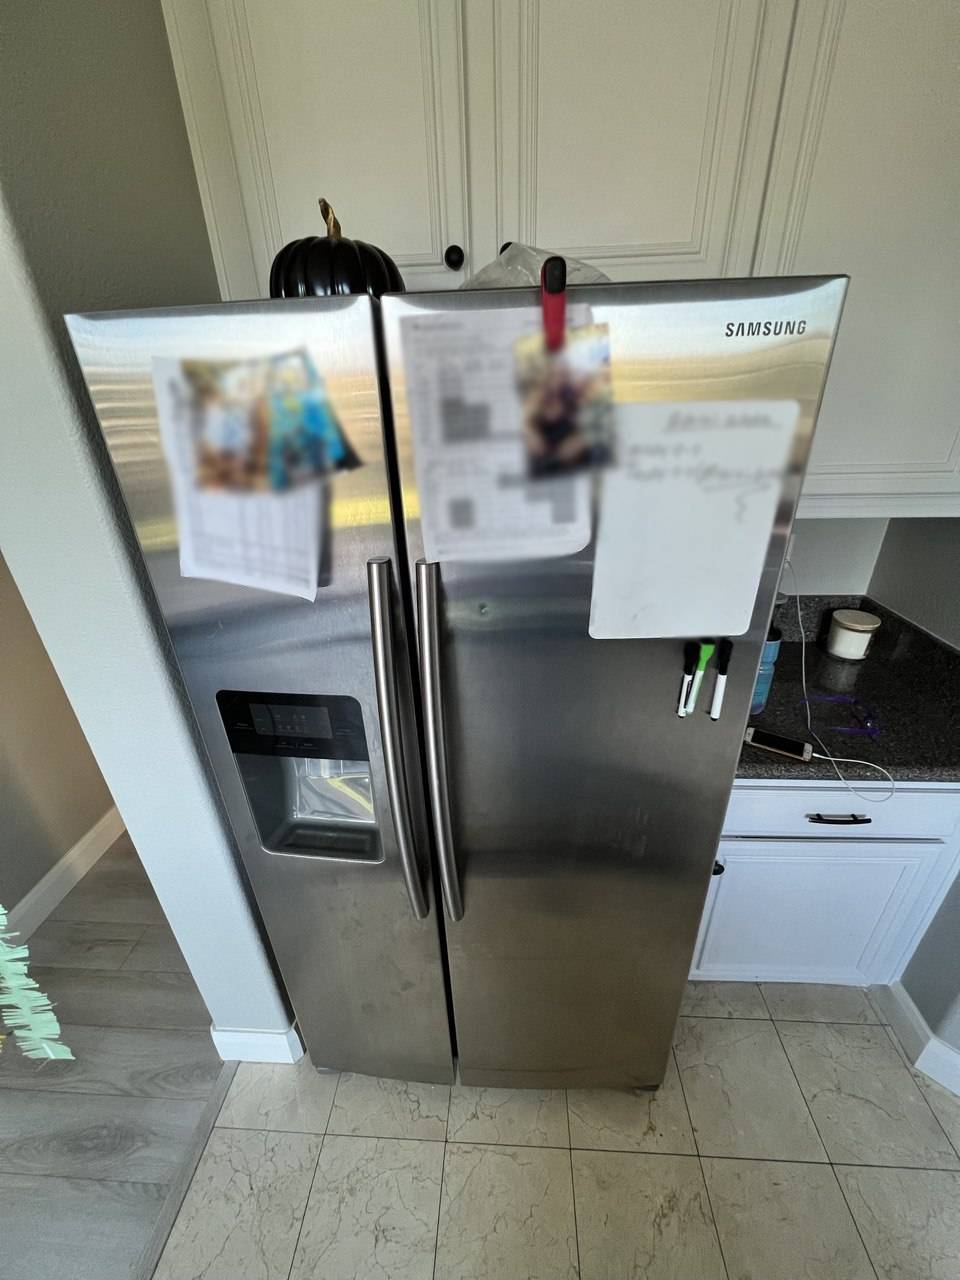 Fridge Samsung Repair Refrigerator Repair